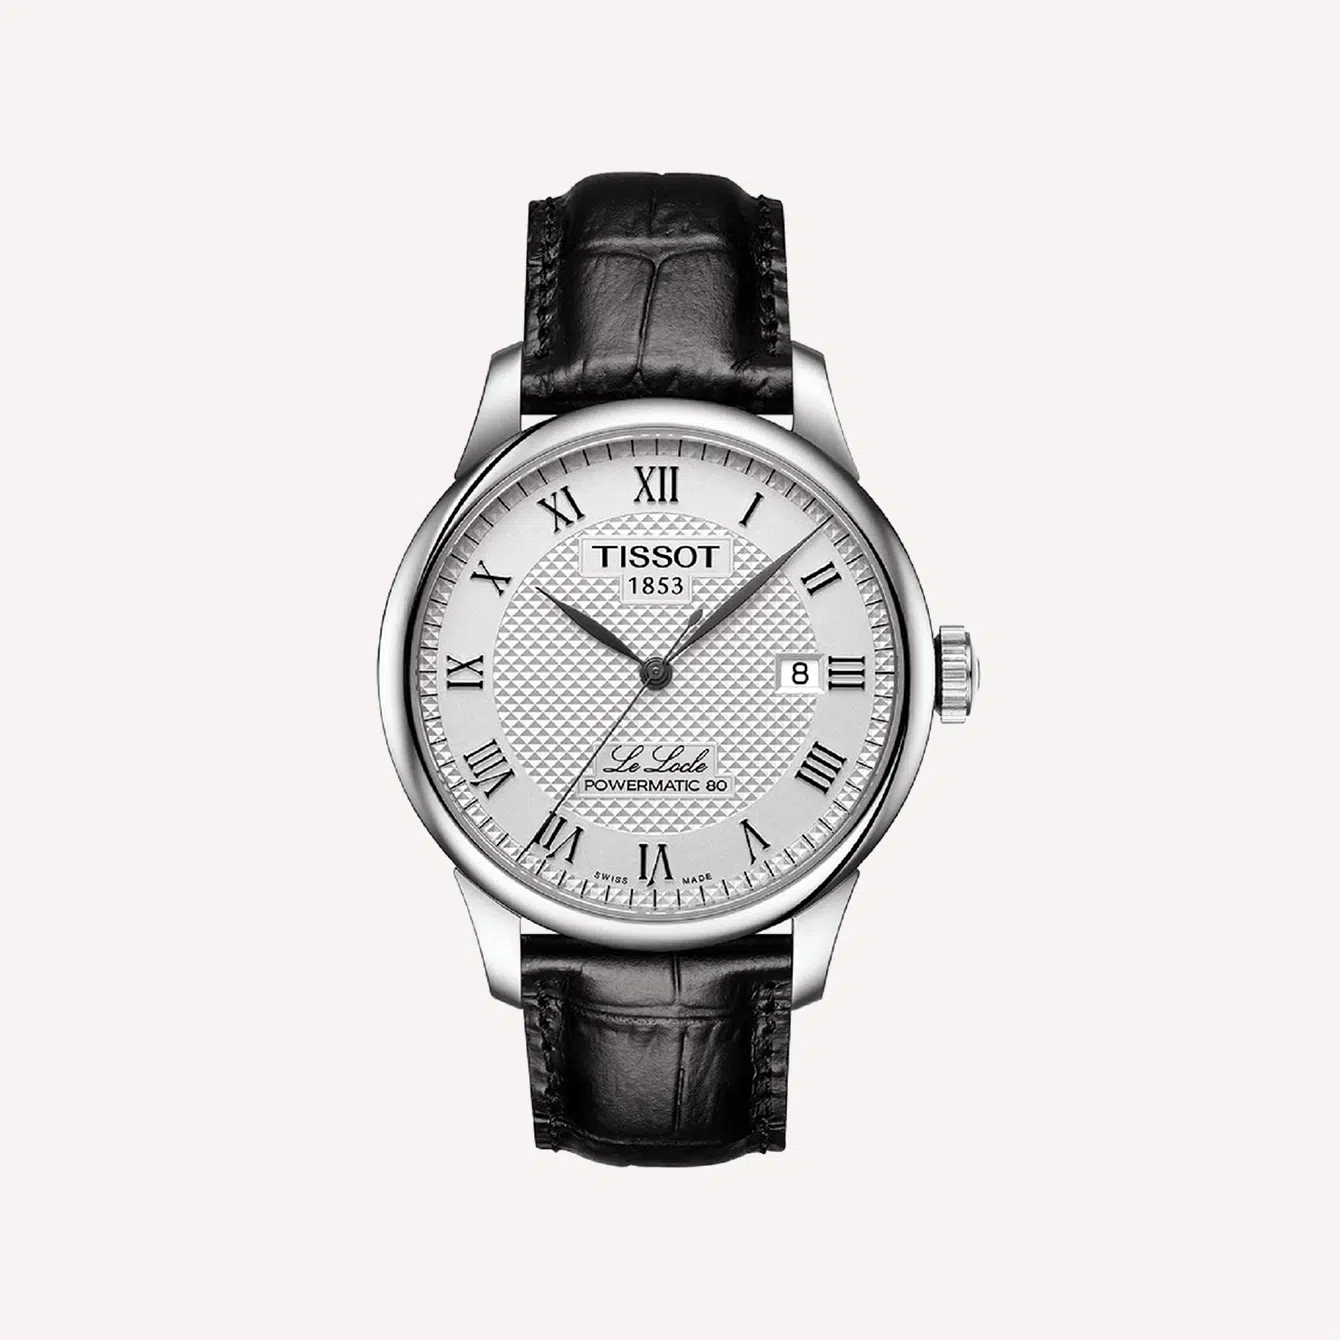 tweeling Schipbreuk Geniet 20 Must Know Swiss Watch Brands • The Slender Wrist